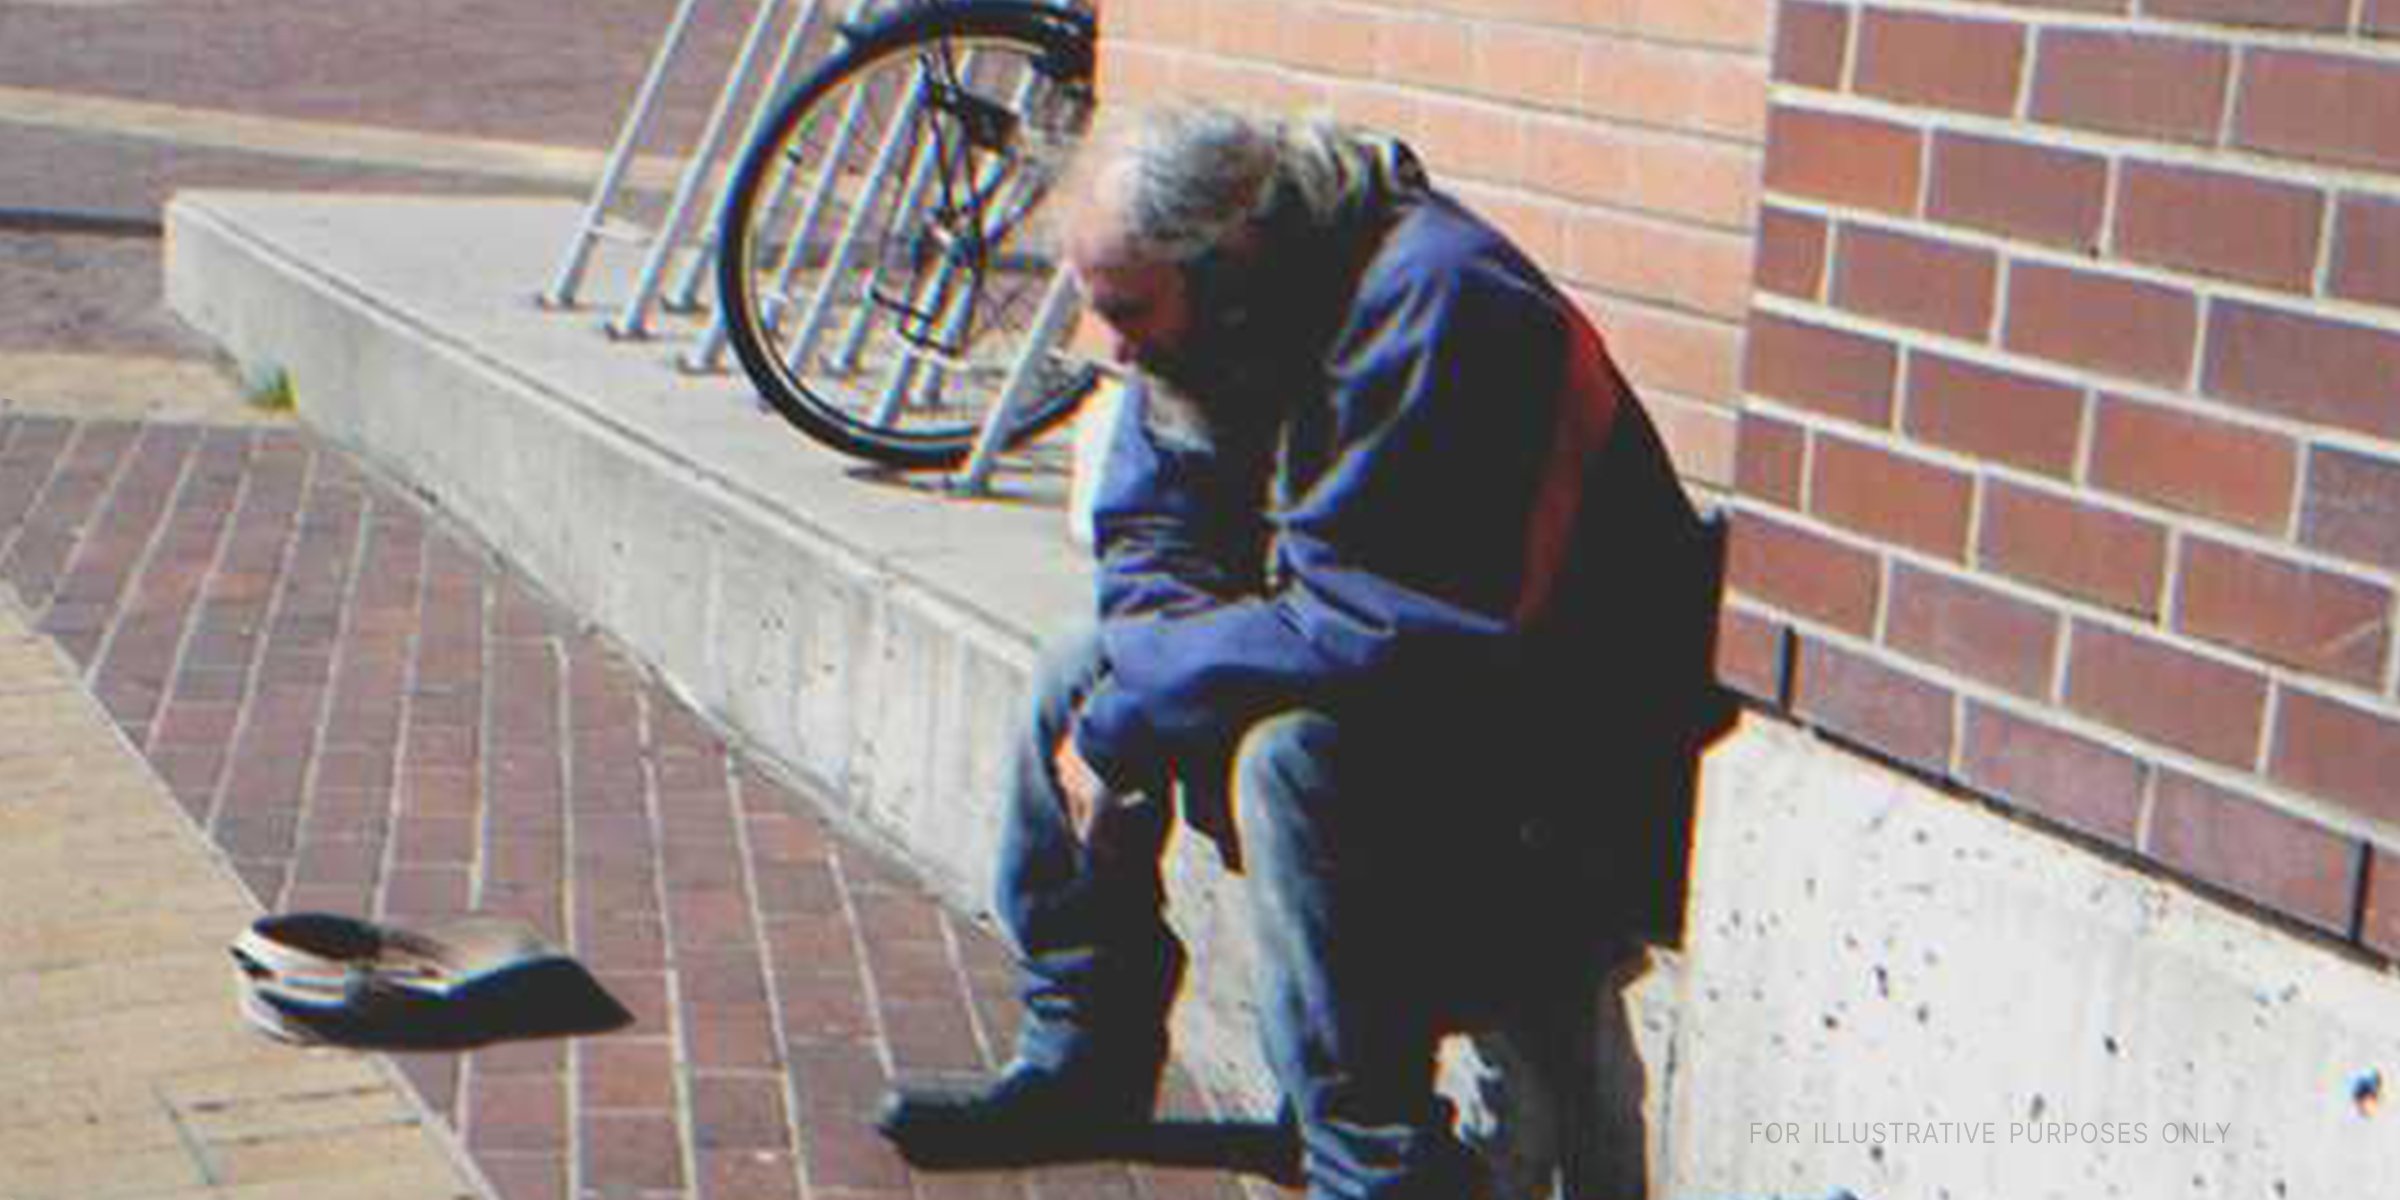 Anciano sentadio en una acera. | Foto: Flickr.com/flightlog (CC BY 2.0)